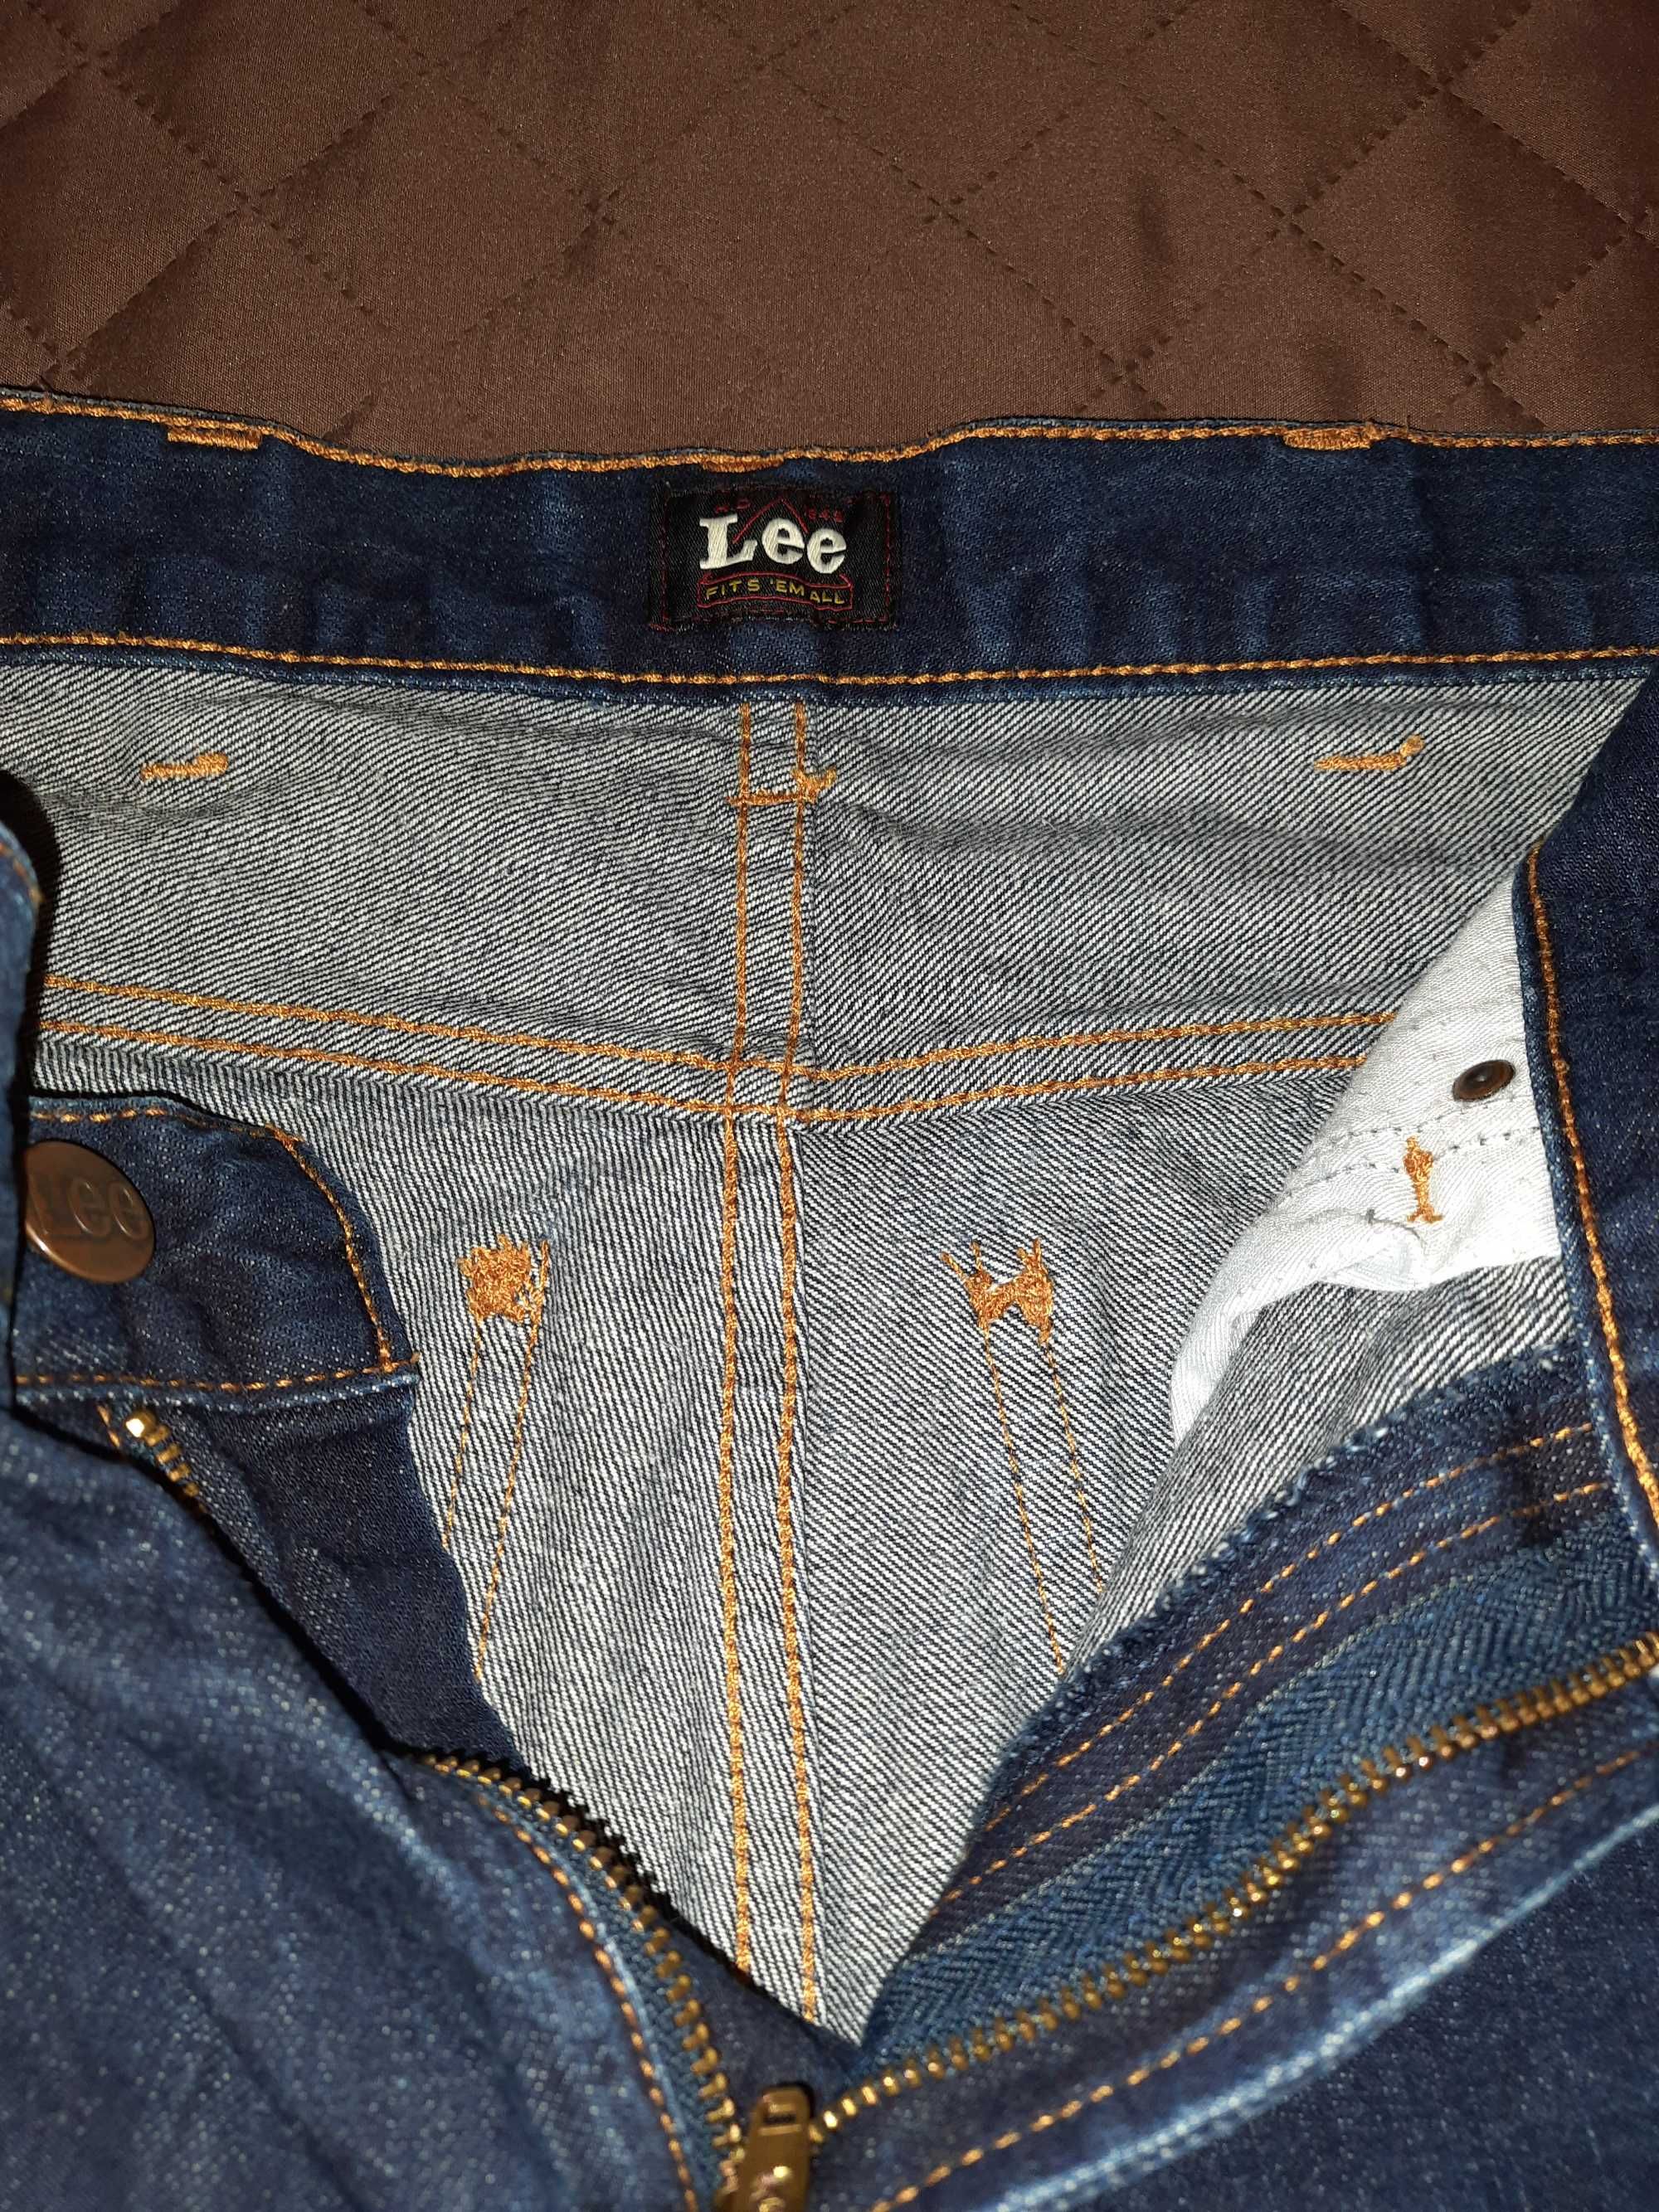 Мужской джинсовый костюм Lee (100% коттон) - джинсовая куртка + джинсы